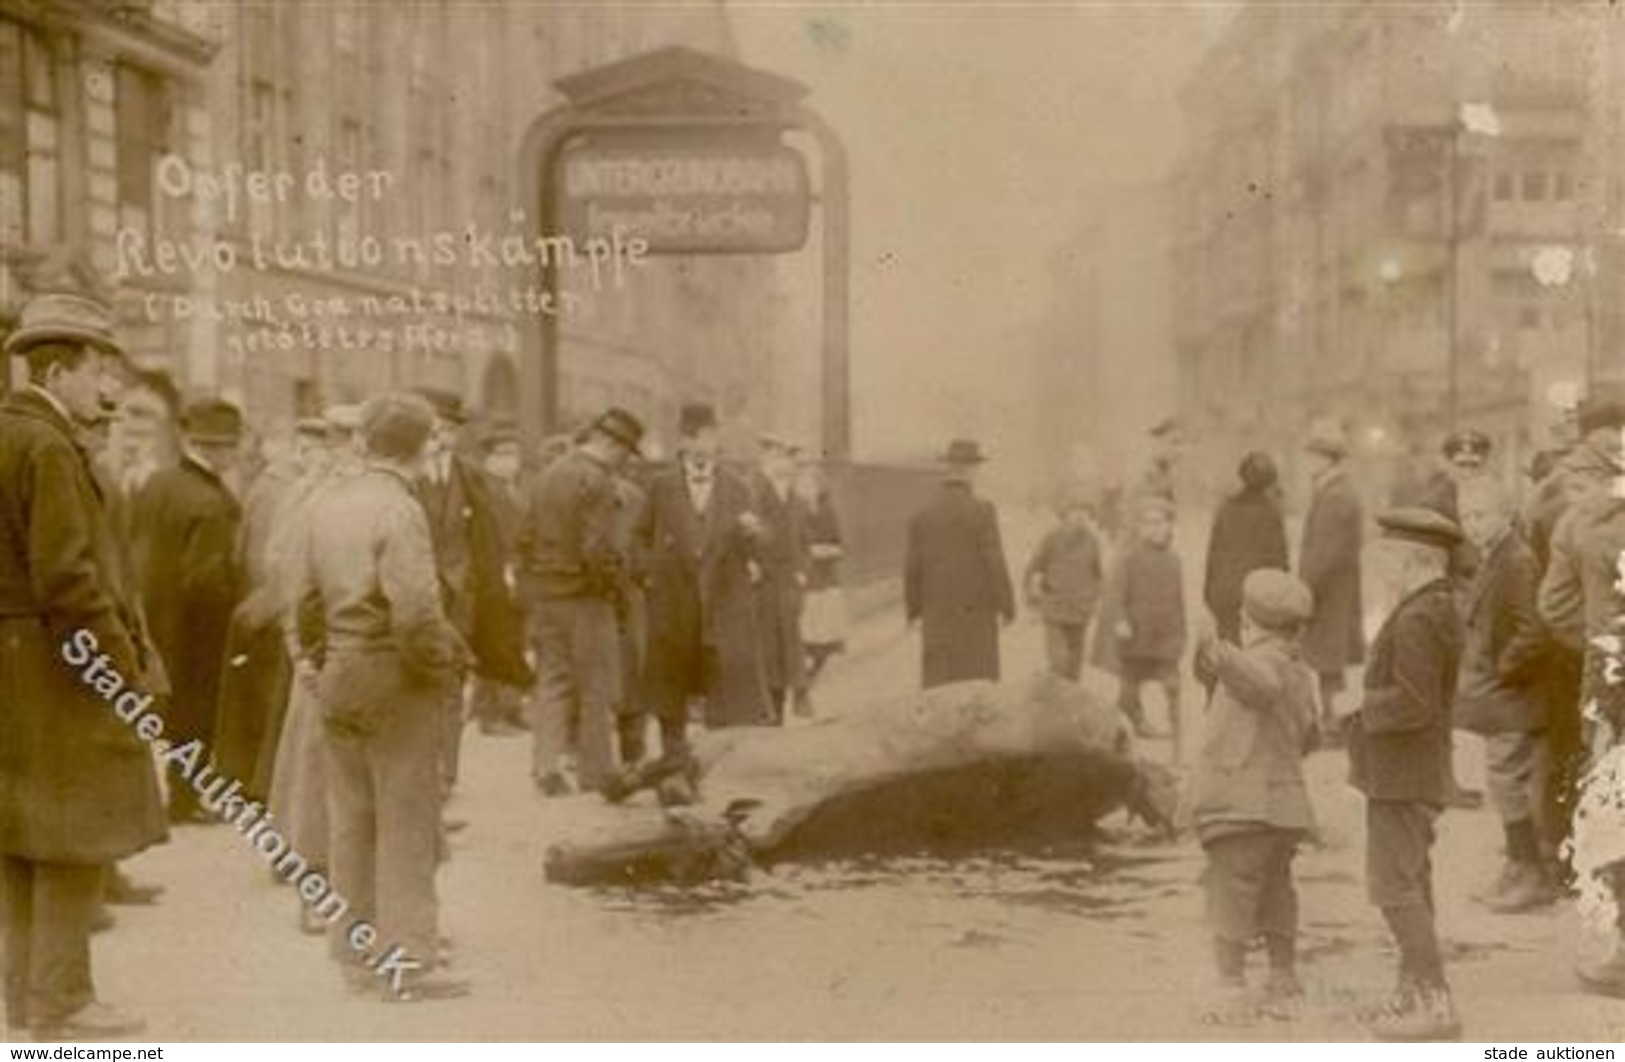 REVOLUTION BERLIN 1919 - Opfer Der Revolutionskämpfe - Durch Granatsplitter Getötetes Pferd (Eckfehler!) Selten! - Krieg